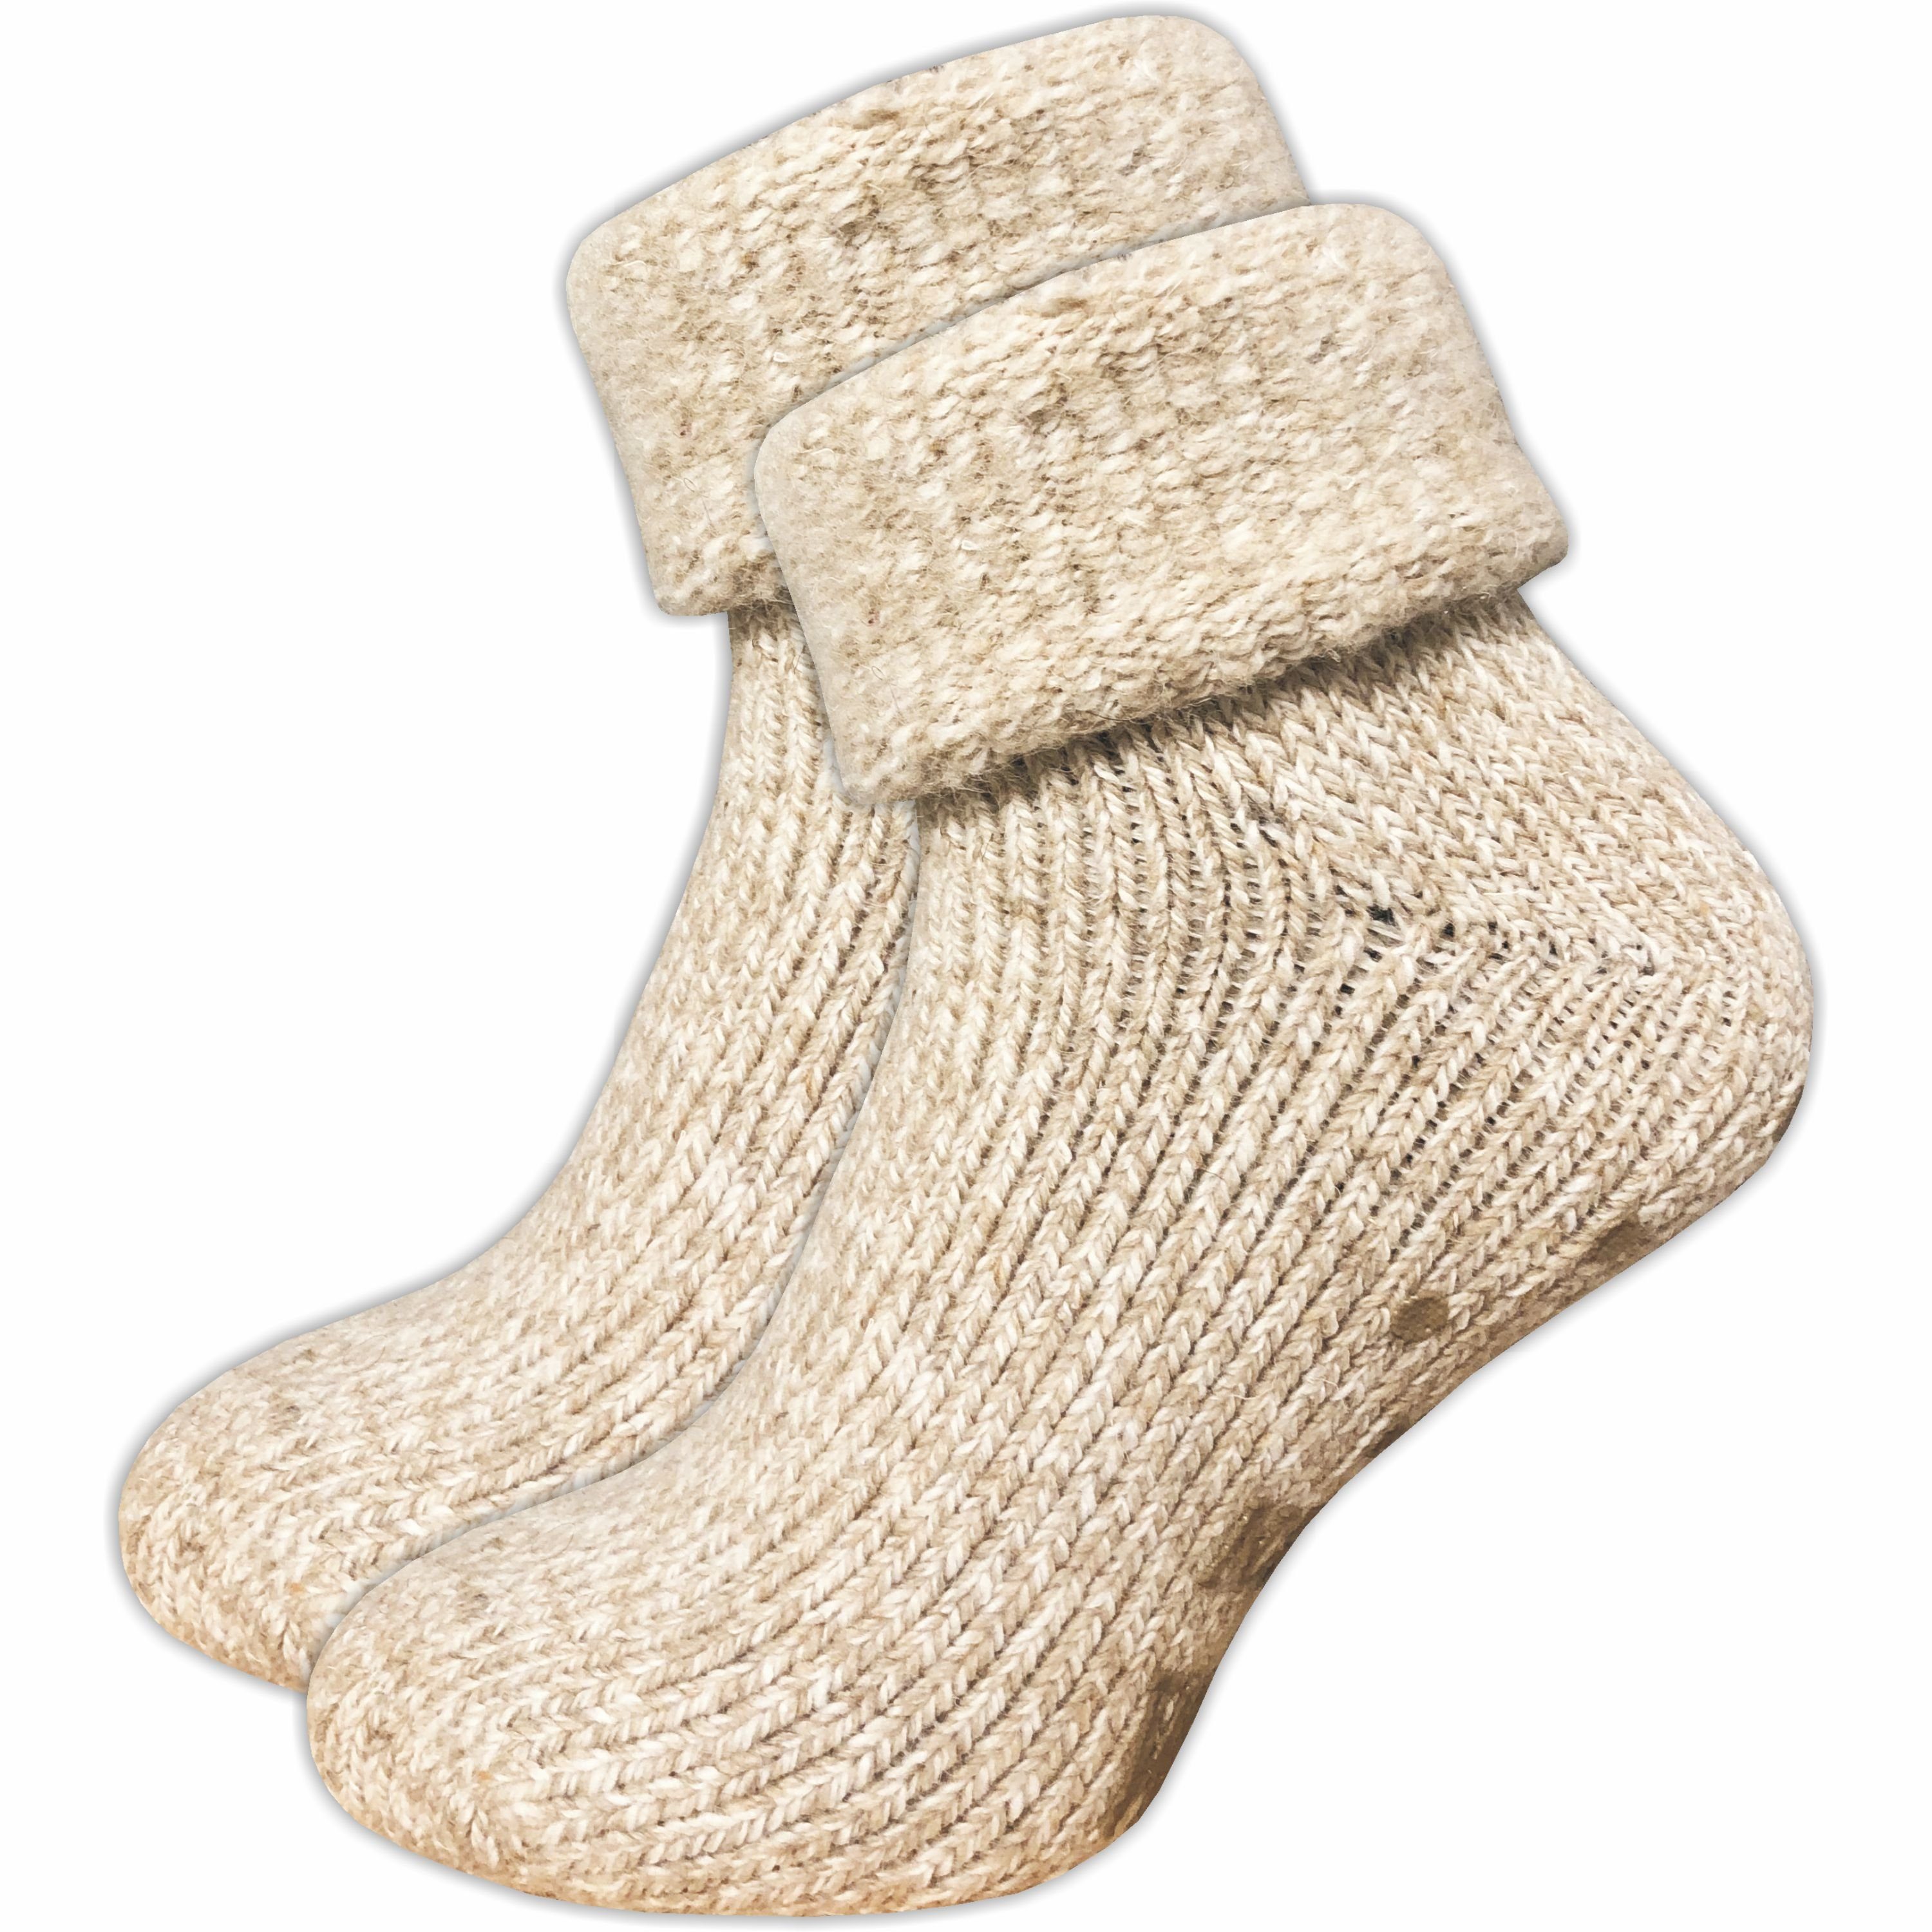 GAWILO ABS-Socken für Damen - Rutschfeste Hausschuhsocken - extra weich & mit Noppen (1 Paar) kuschelige & warme Wolle hilft gegen kalte Füße natur